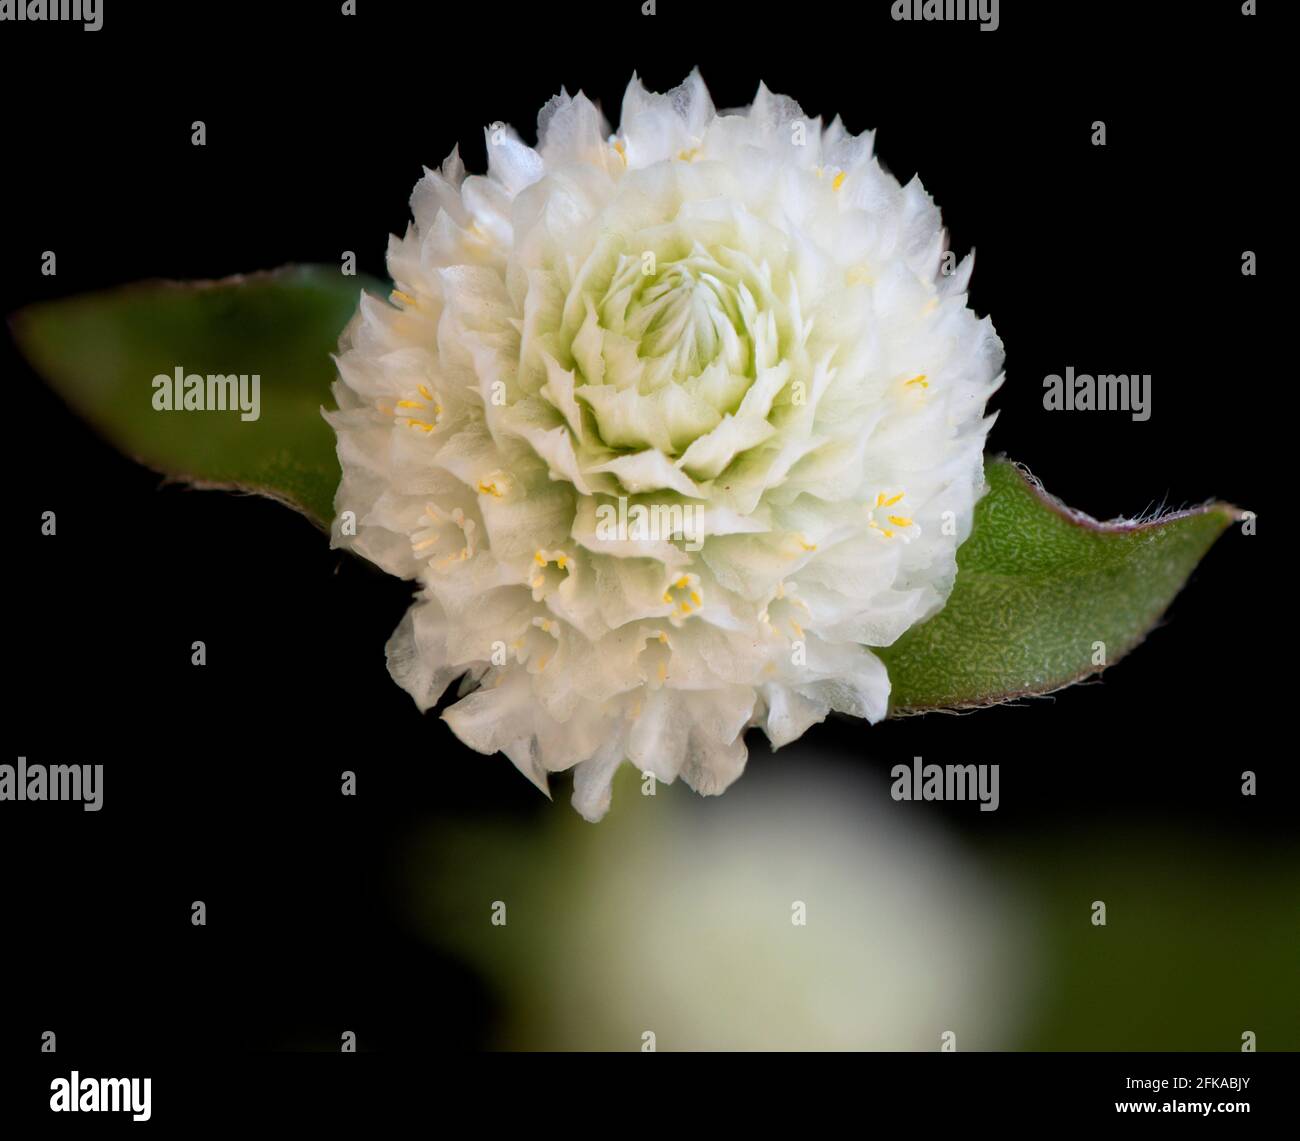 Gros plan d'une fleur d'Amaranth blanche sur un arrière-plan noir utilisant la technique de superposition de mise au point Banque D'Images